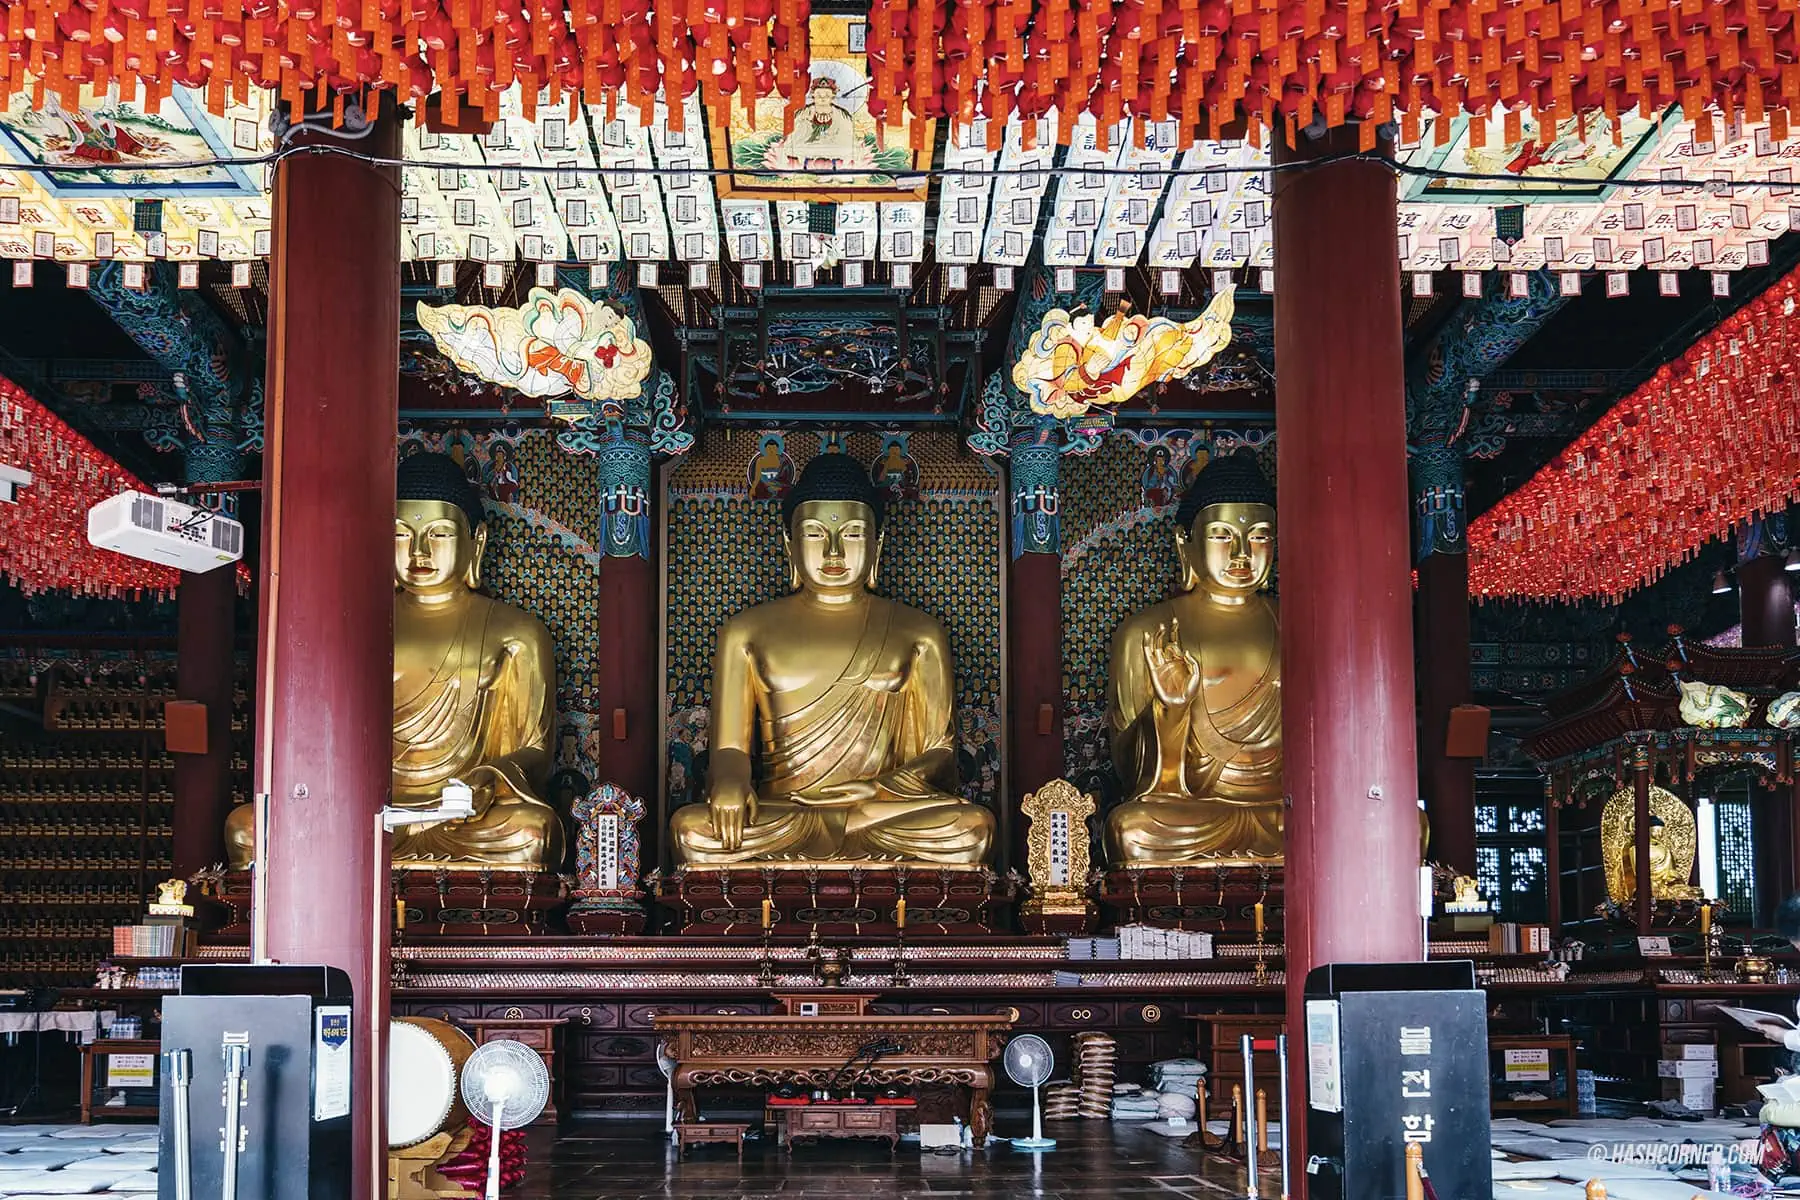 รีวิว วัดโชเกซา (Jogyesa Temple) x โซล ขอพรวัดดังเกาหลีอายุกว่า 600 ปี